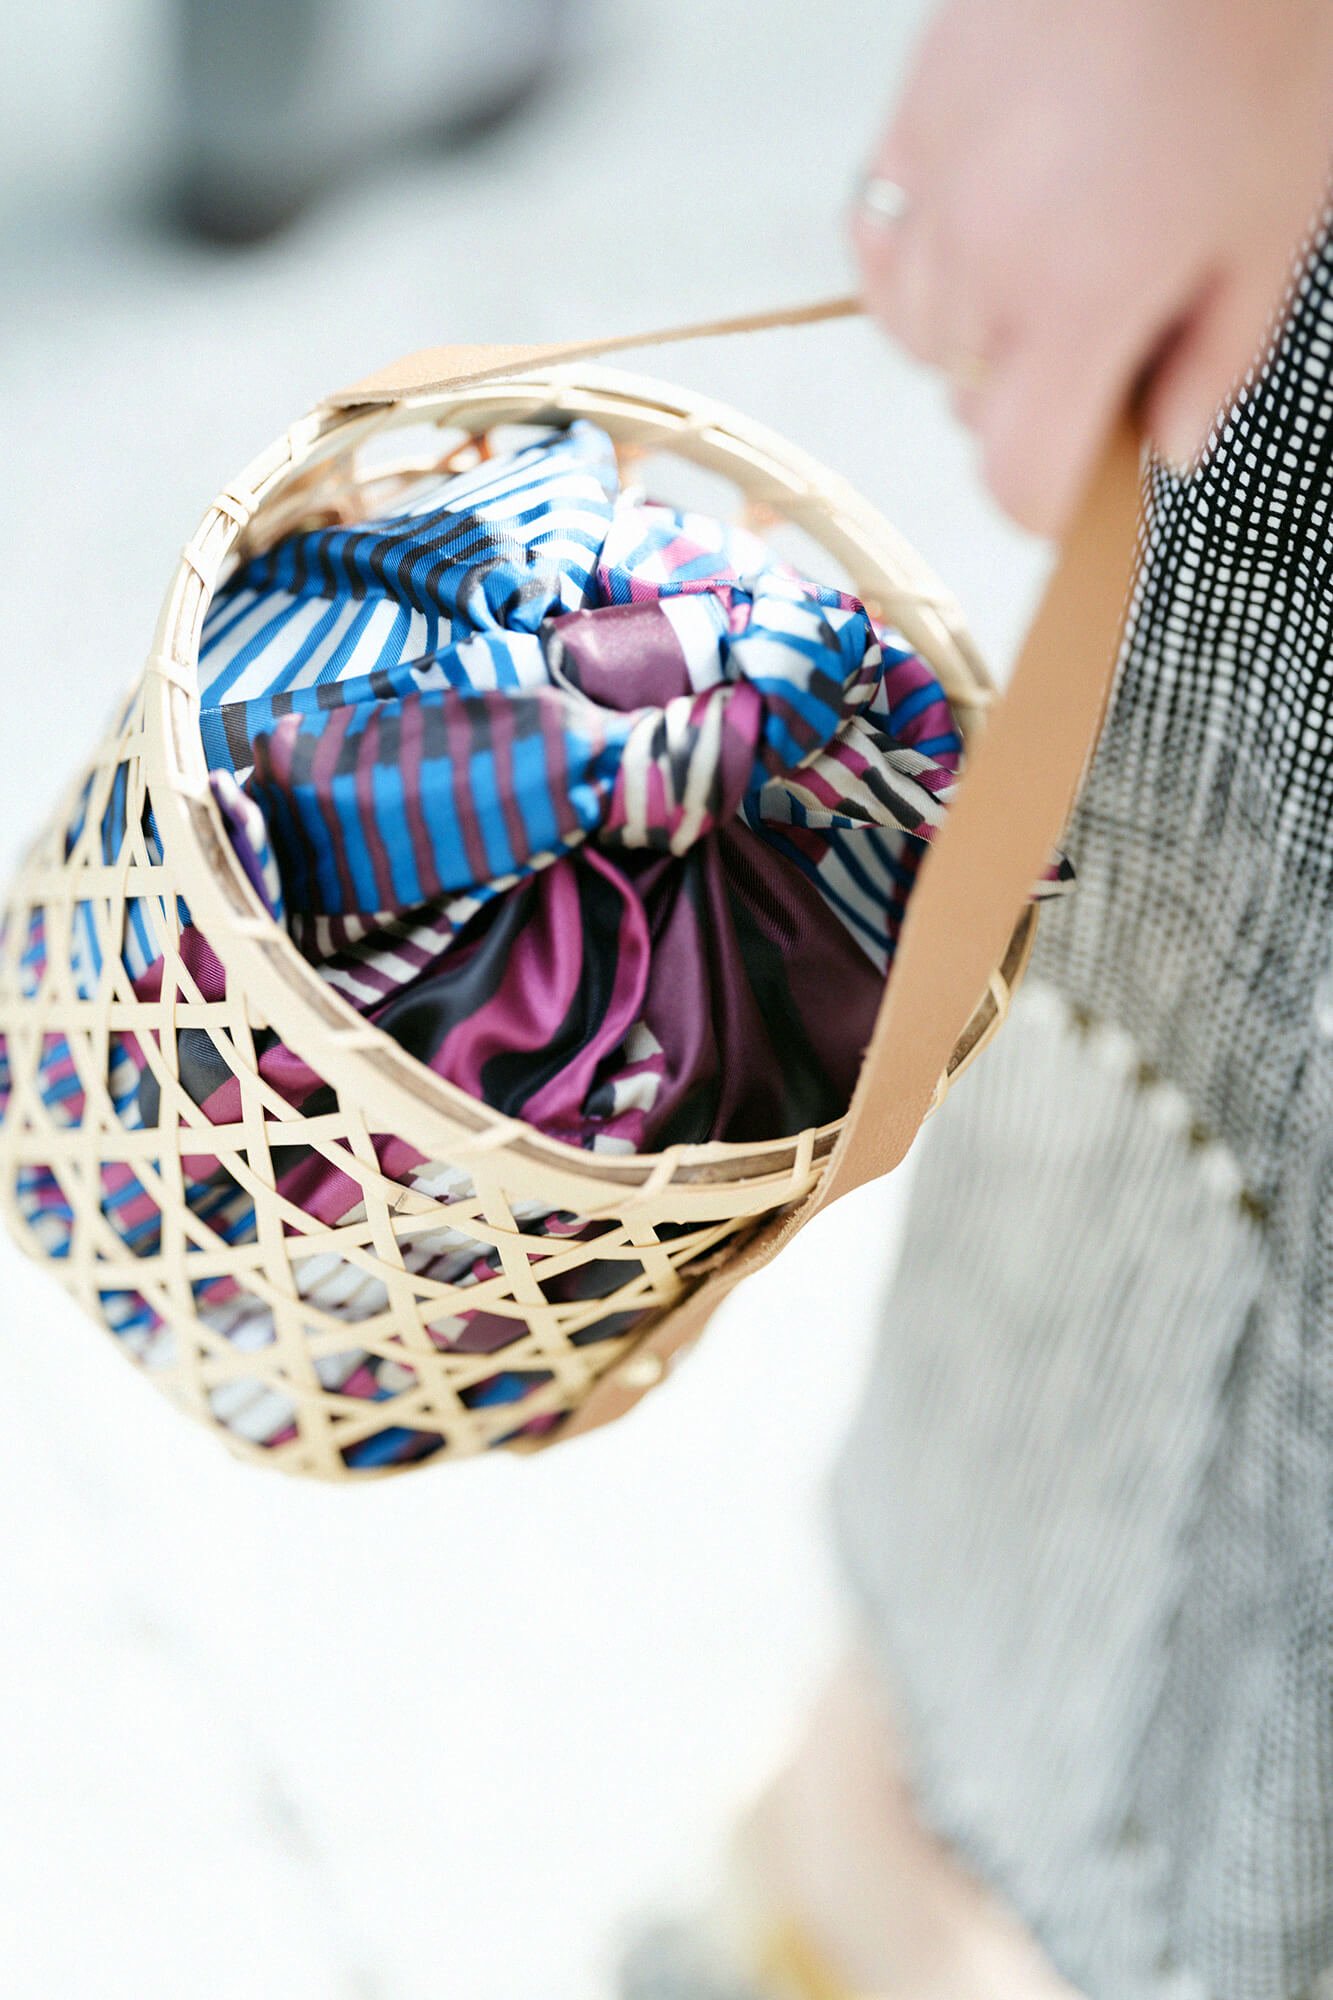 むつめ － 竹を“六つ編み”で編み上げた竹又謹製の竹籠バックです。